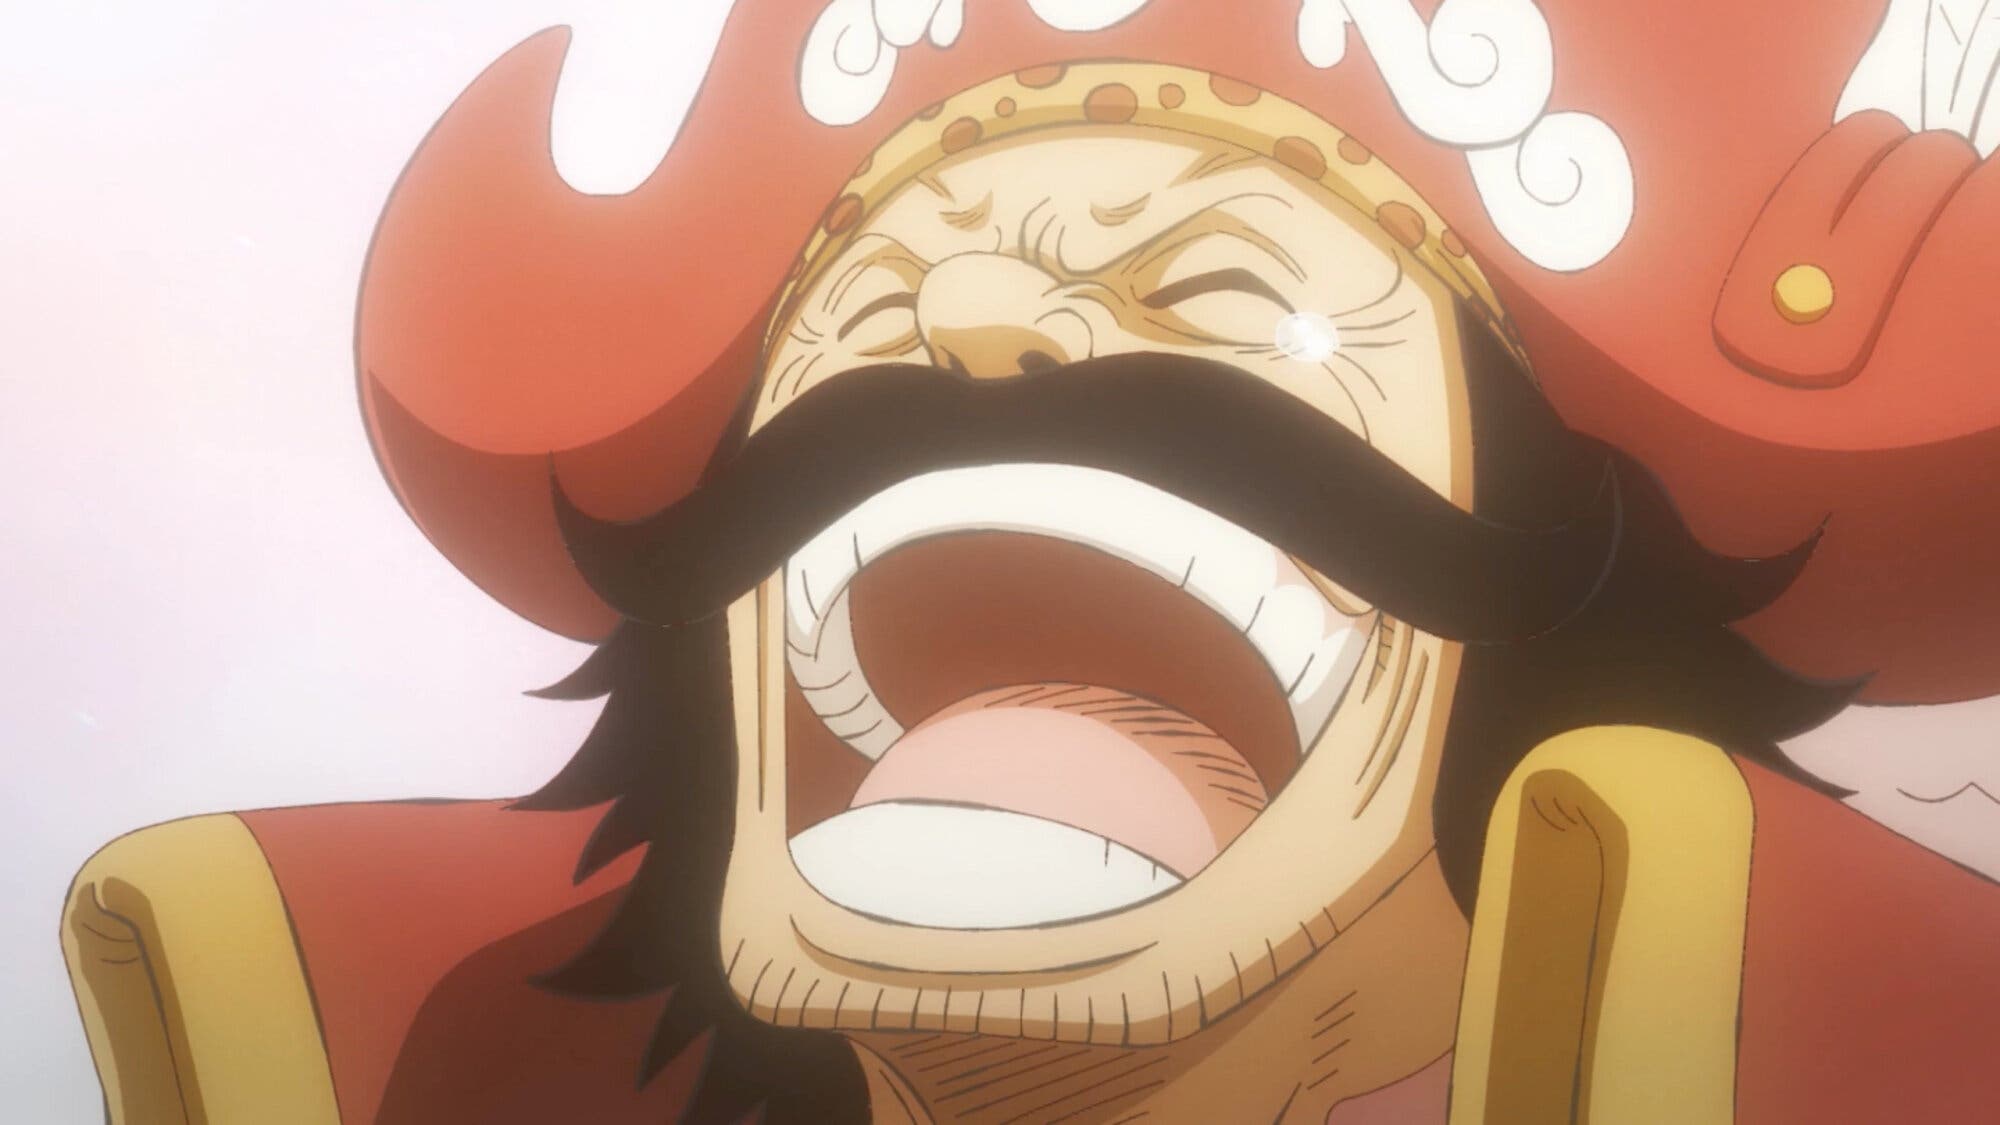 Teoría One Piece: Joy Boy es el creador de la Hito Hito no Mi